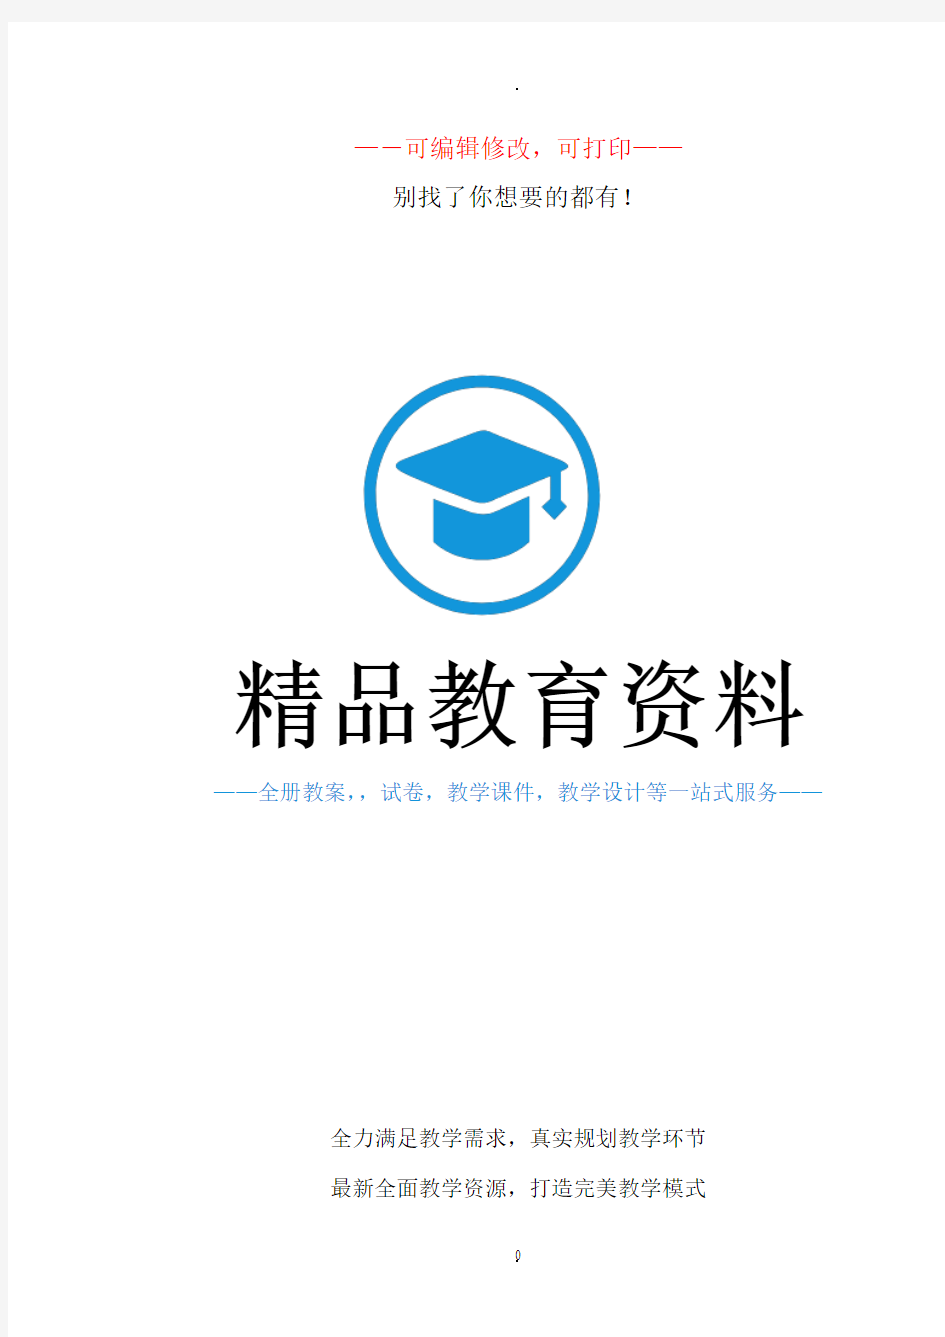 四年级下册综合实践活动教案(上海科技教育出版社)51019